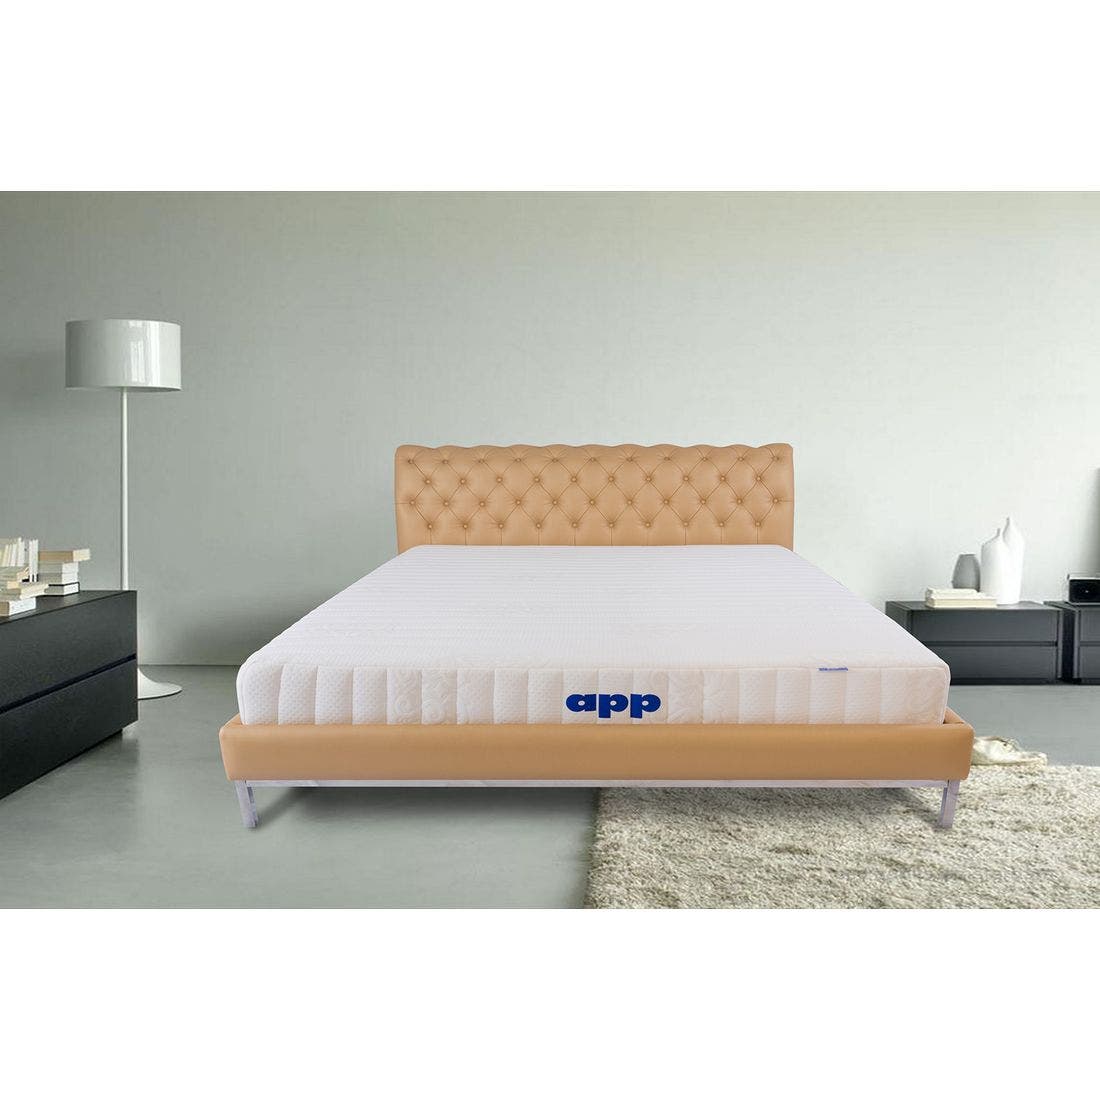 39015043-mattress-bedding-mattresses-latex-mattresses-31